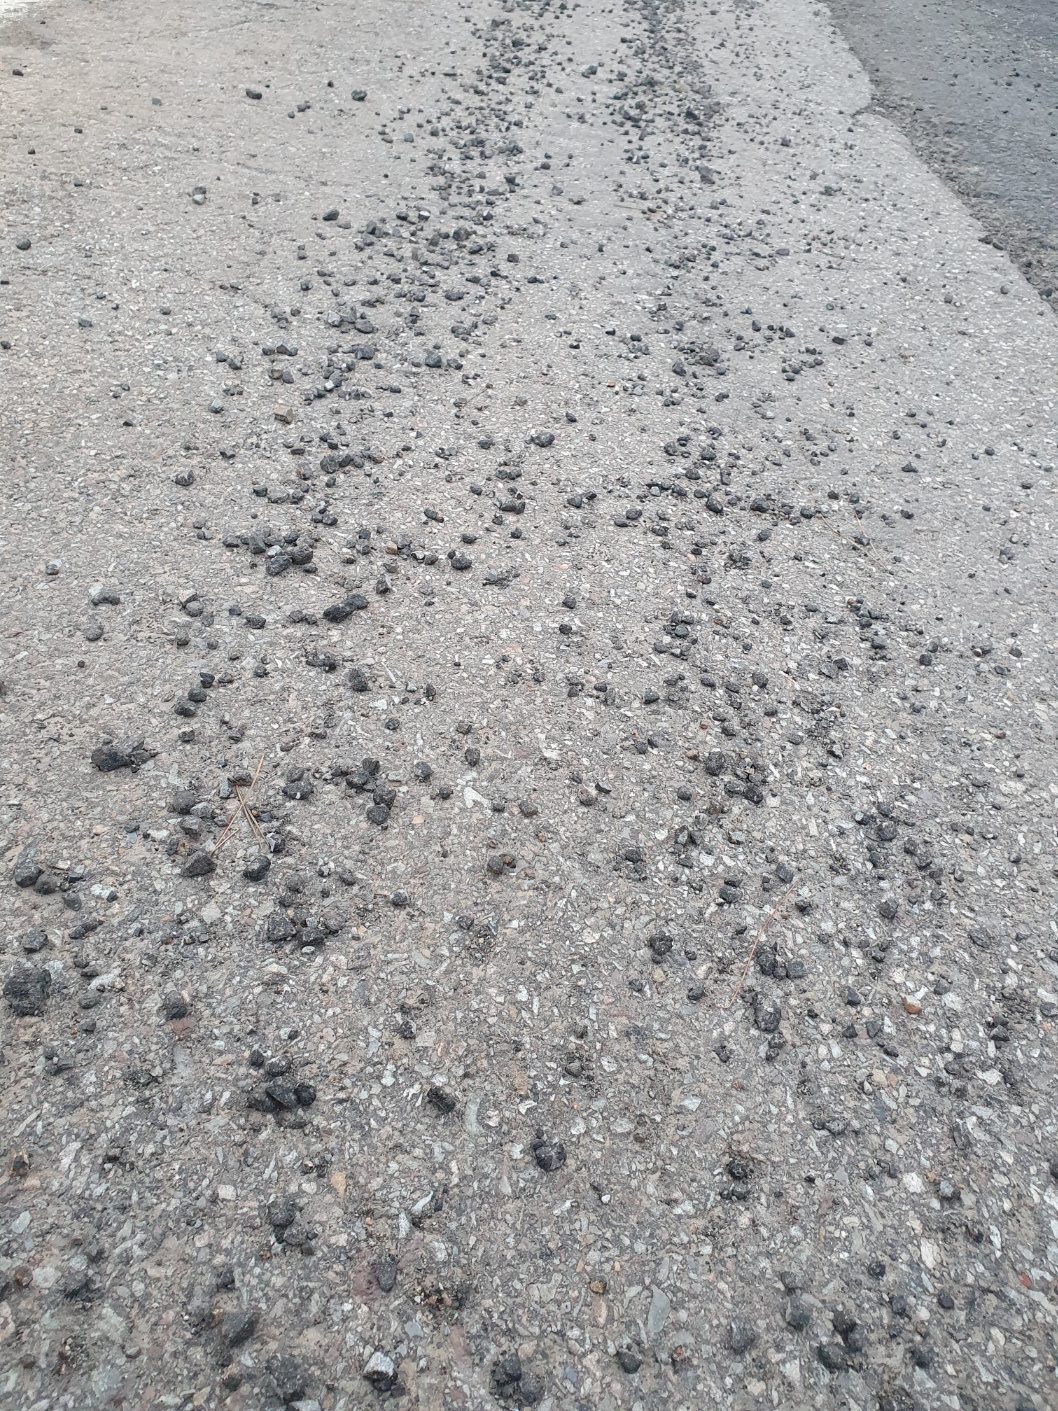 임시포장한 도로위 방치된 아스콘 조각과 돌들로 인한 차량훼손 2